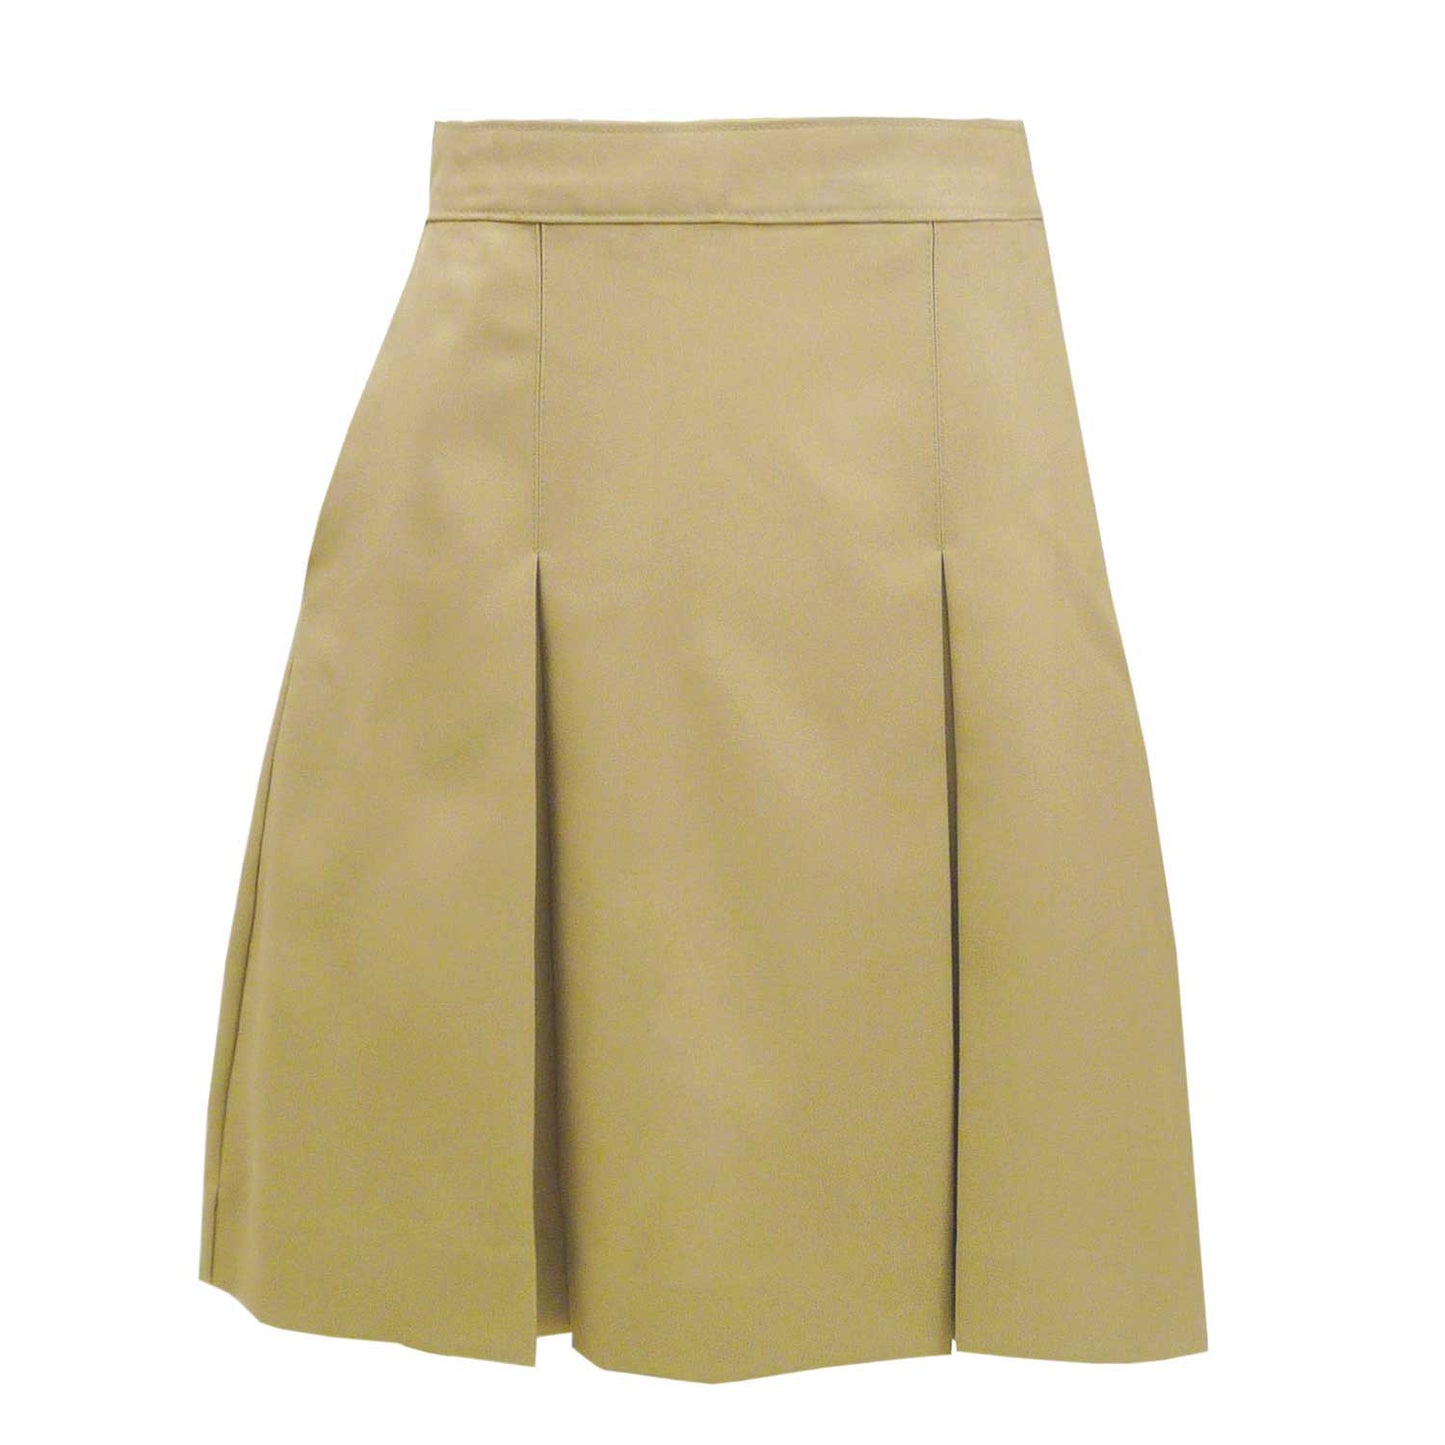 Skirt Model 34 - Blend Solids - 1113